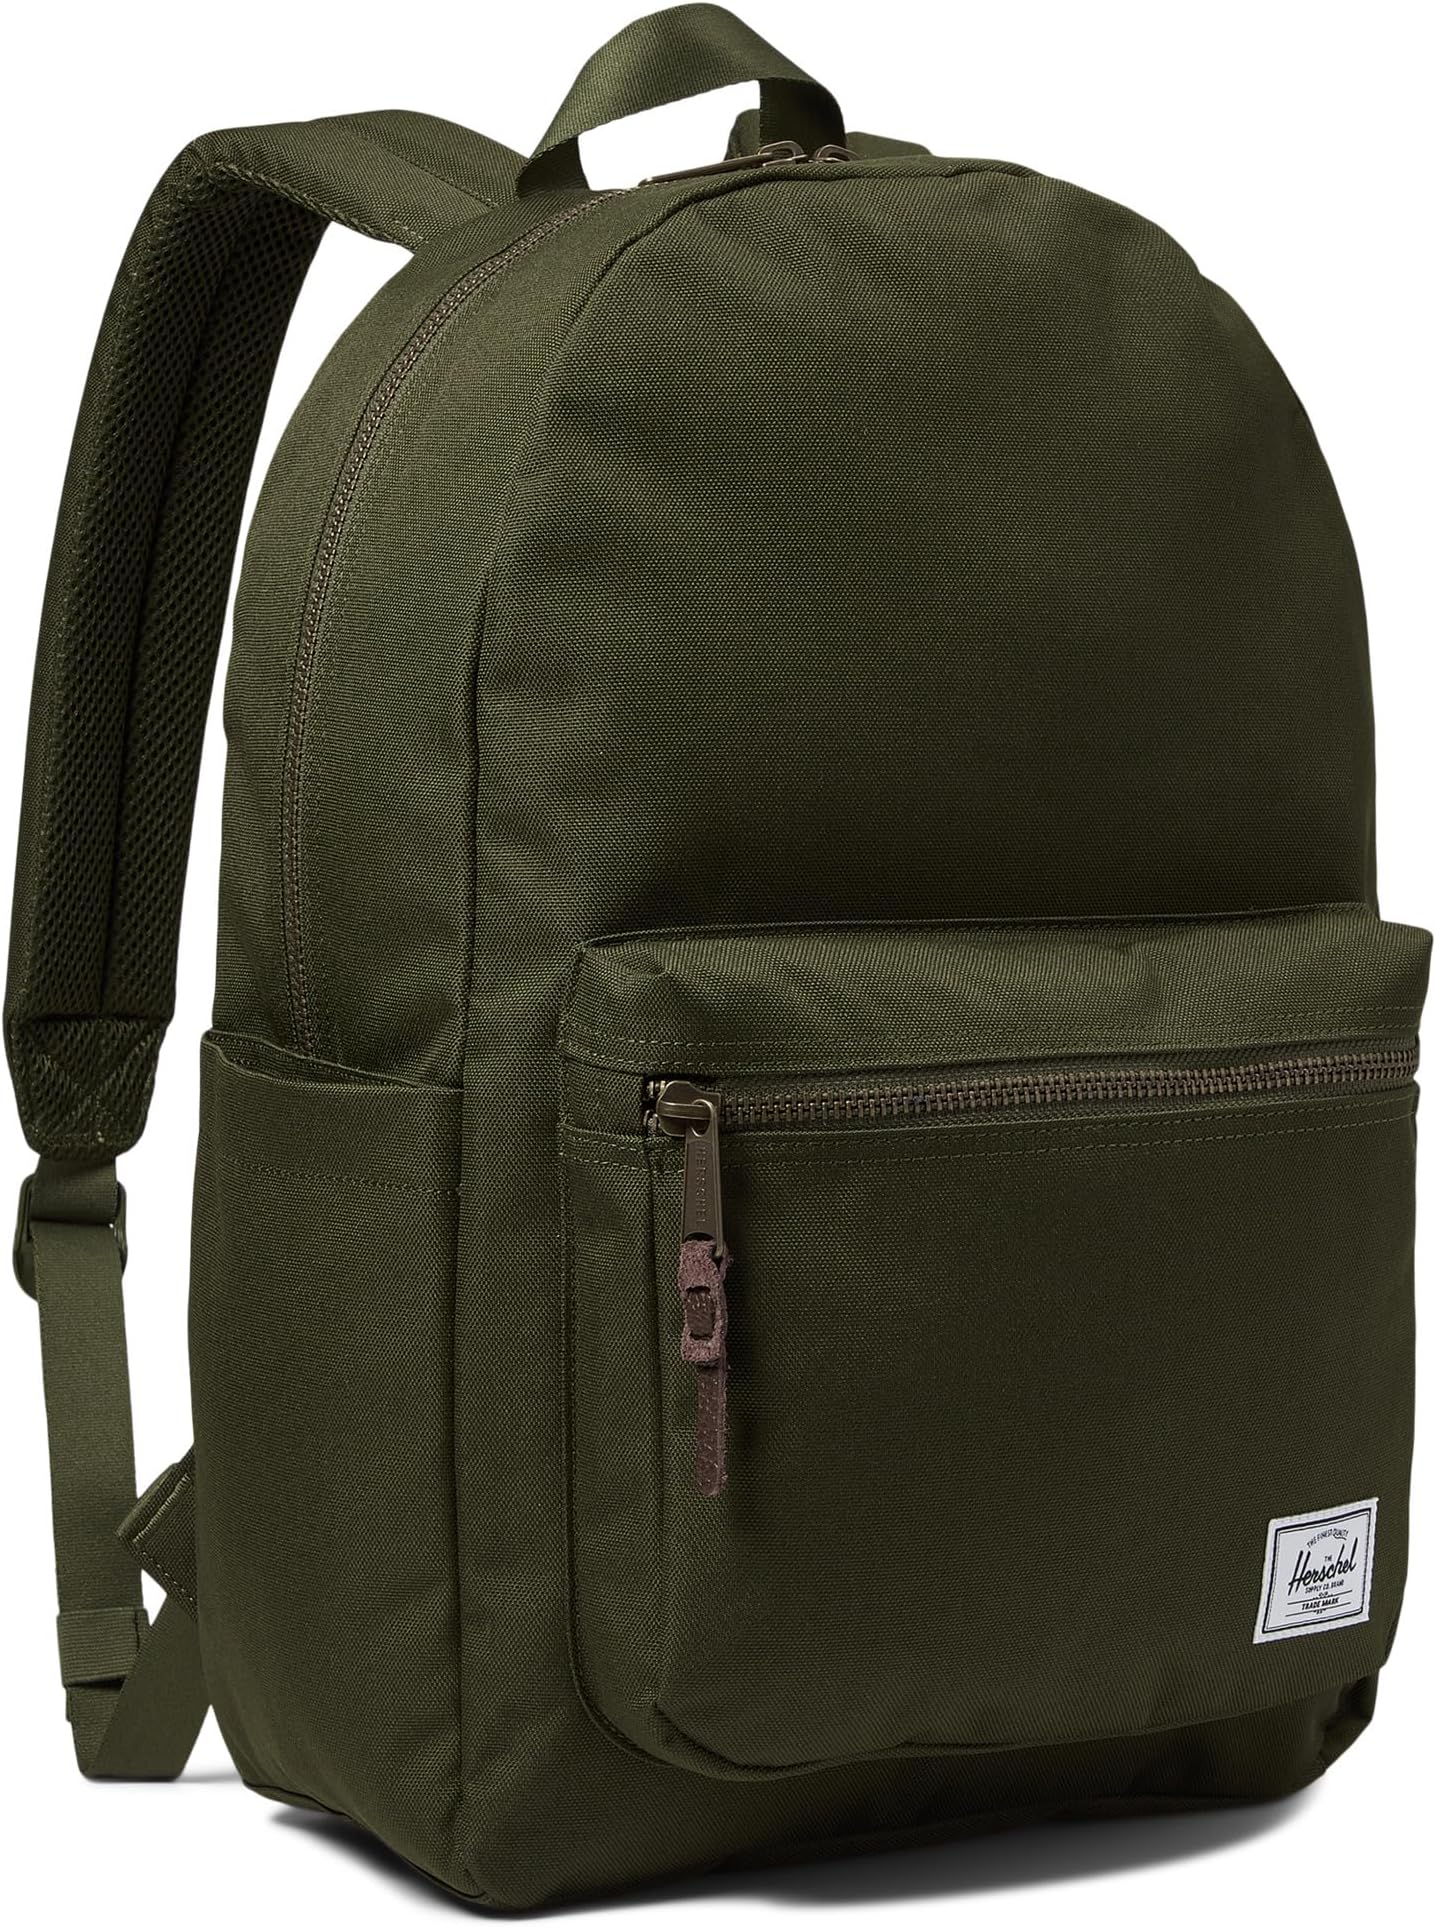 рюкзак classic x large herschel supply co цвет ivy green Рюкзак Settlement Backpack Herschel Supply Co., цвет Ivy Green